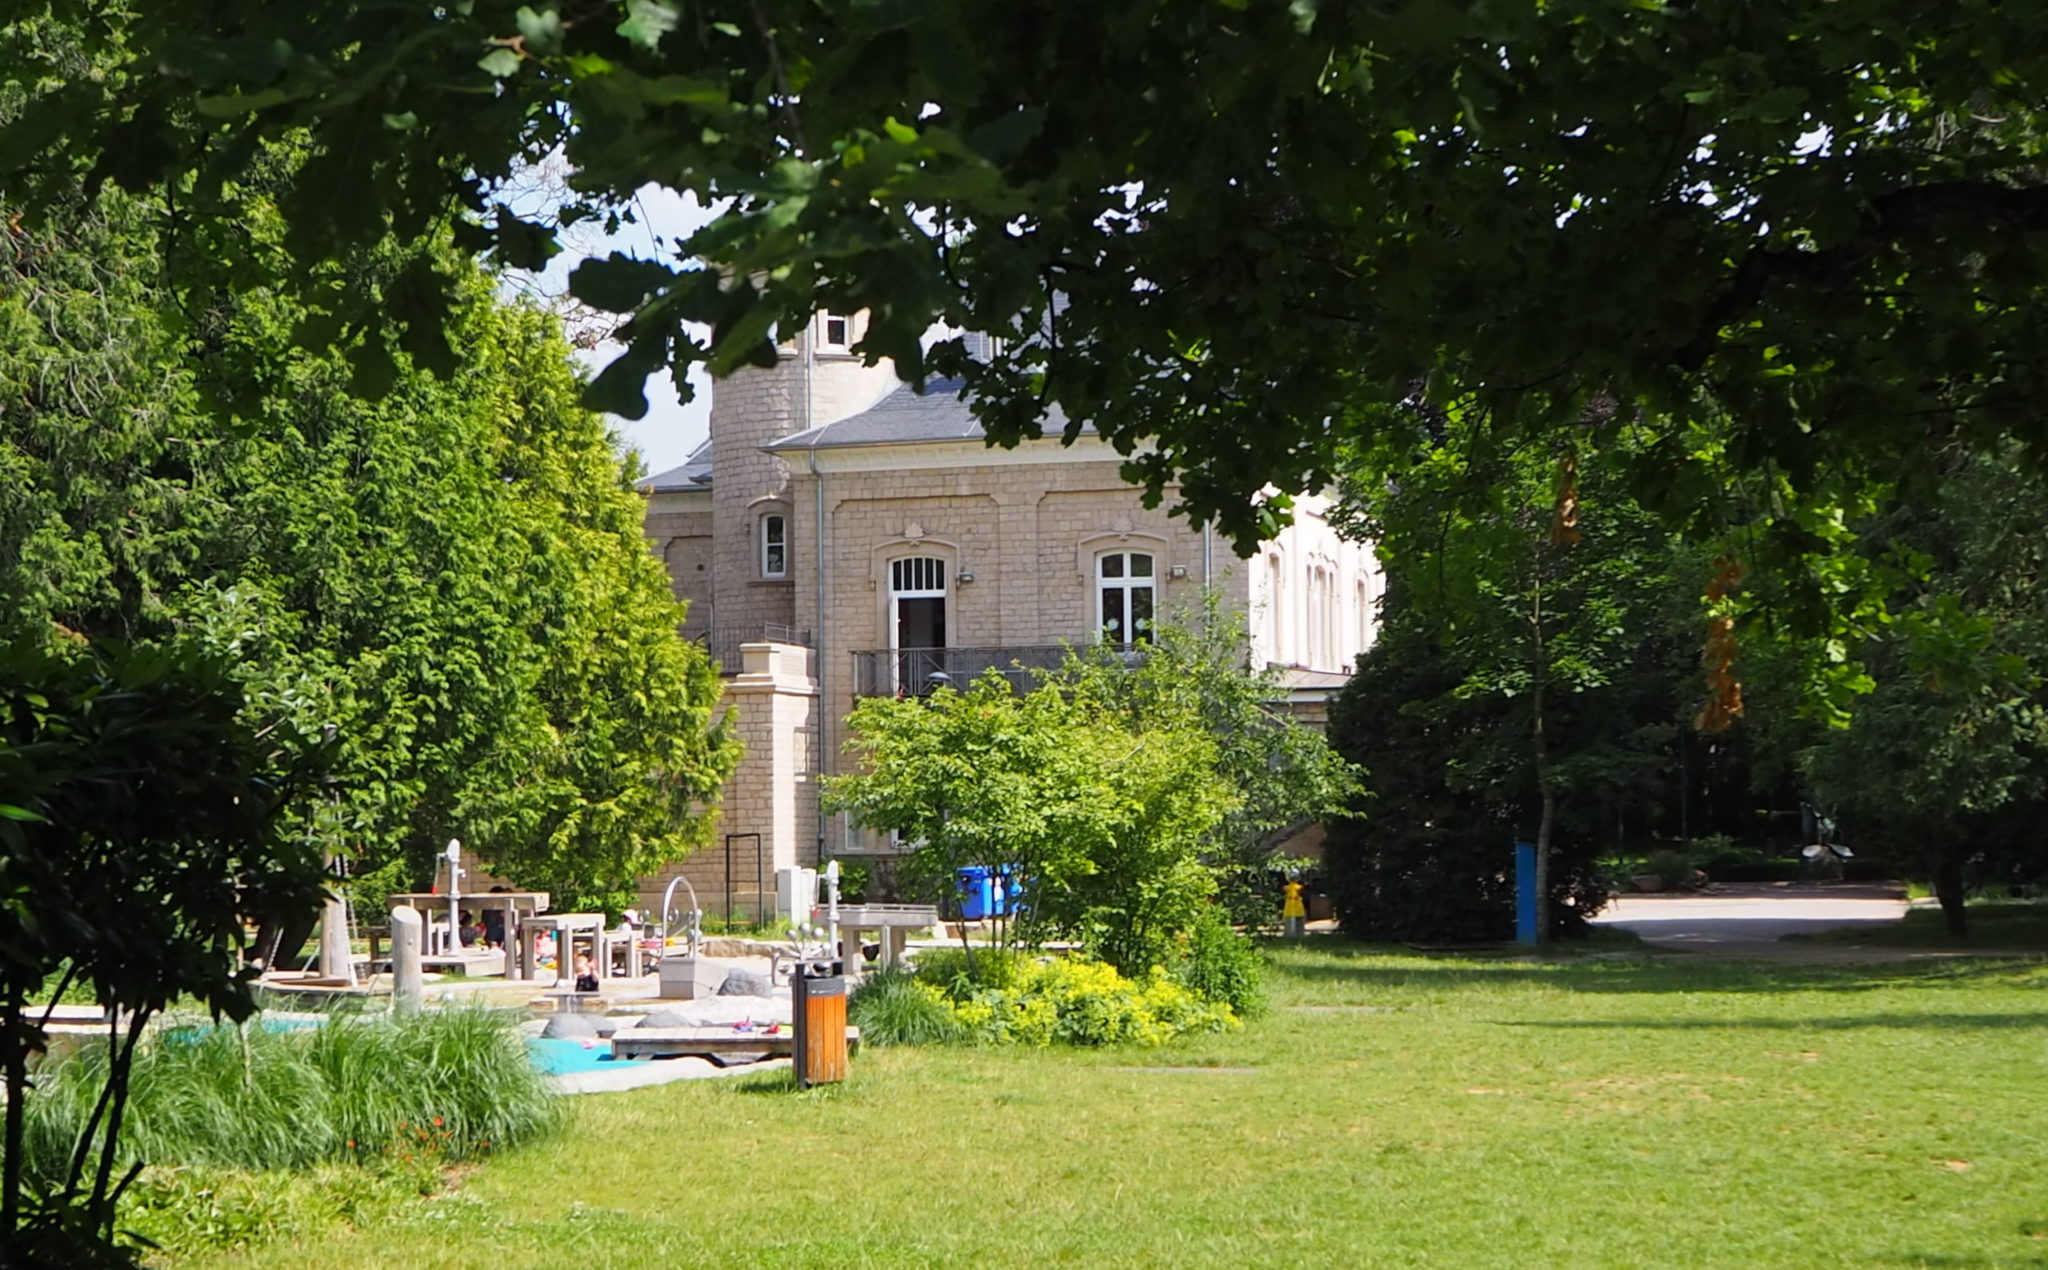 Esch im Sommer – Parc Laval